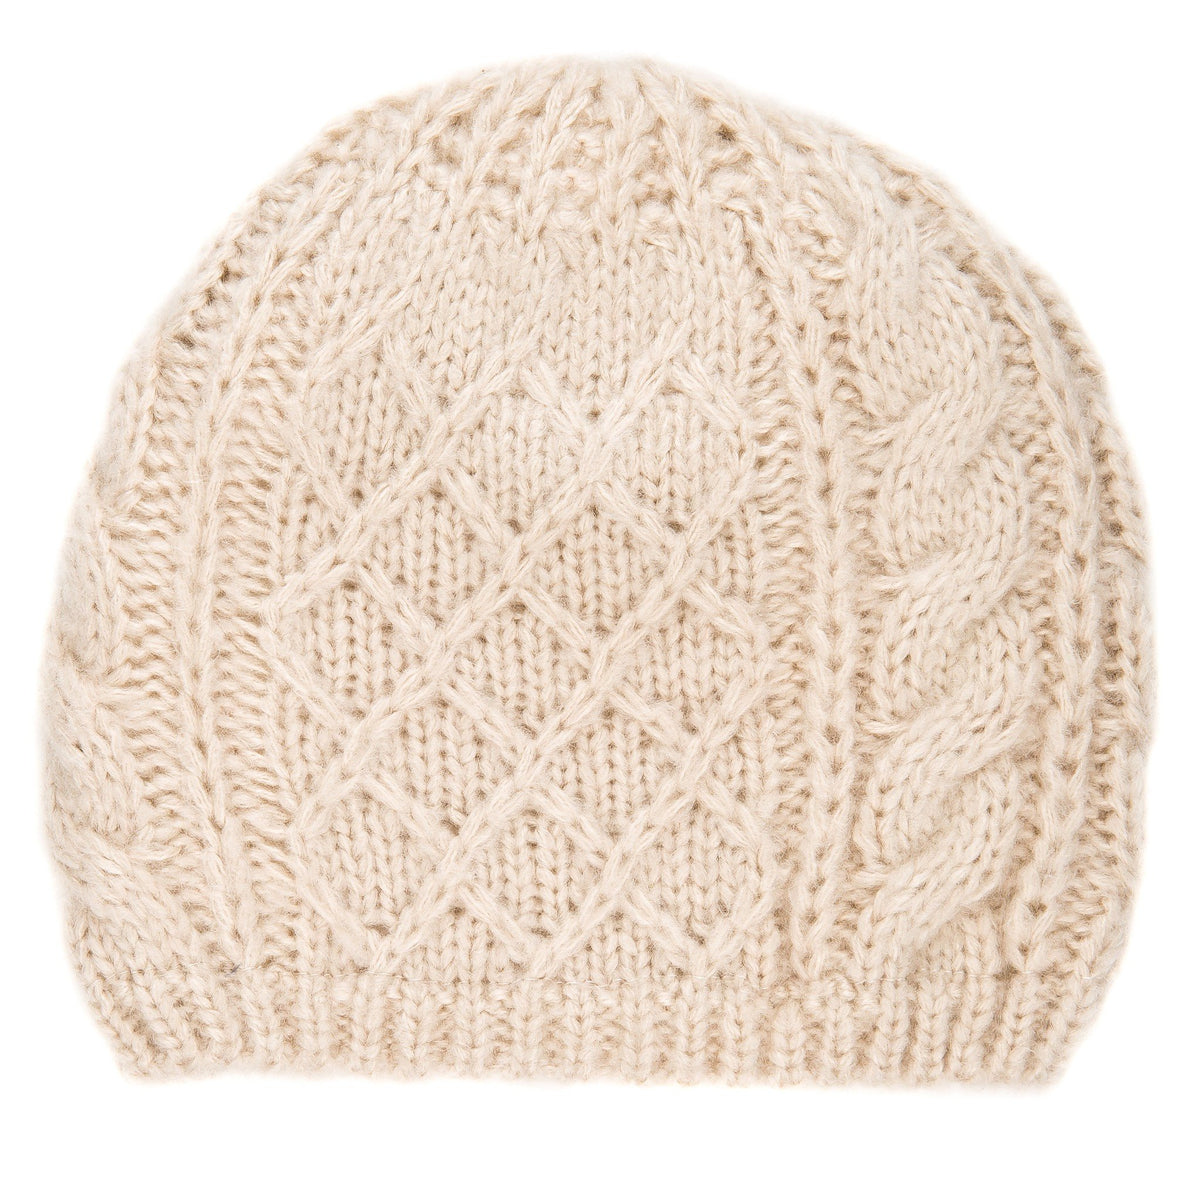 Men's Super-Soft Cable Knit Avalanche Winter Hat - Beige